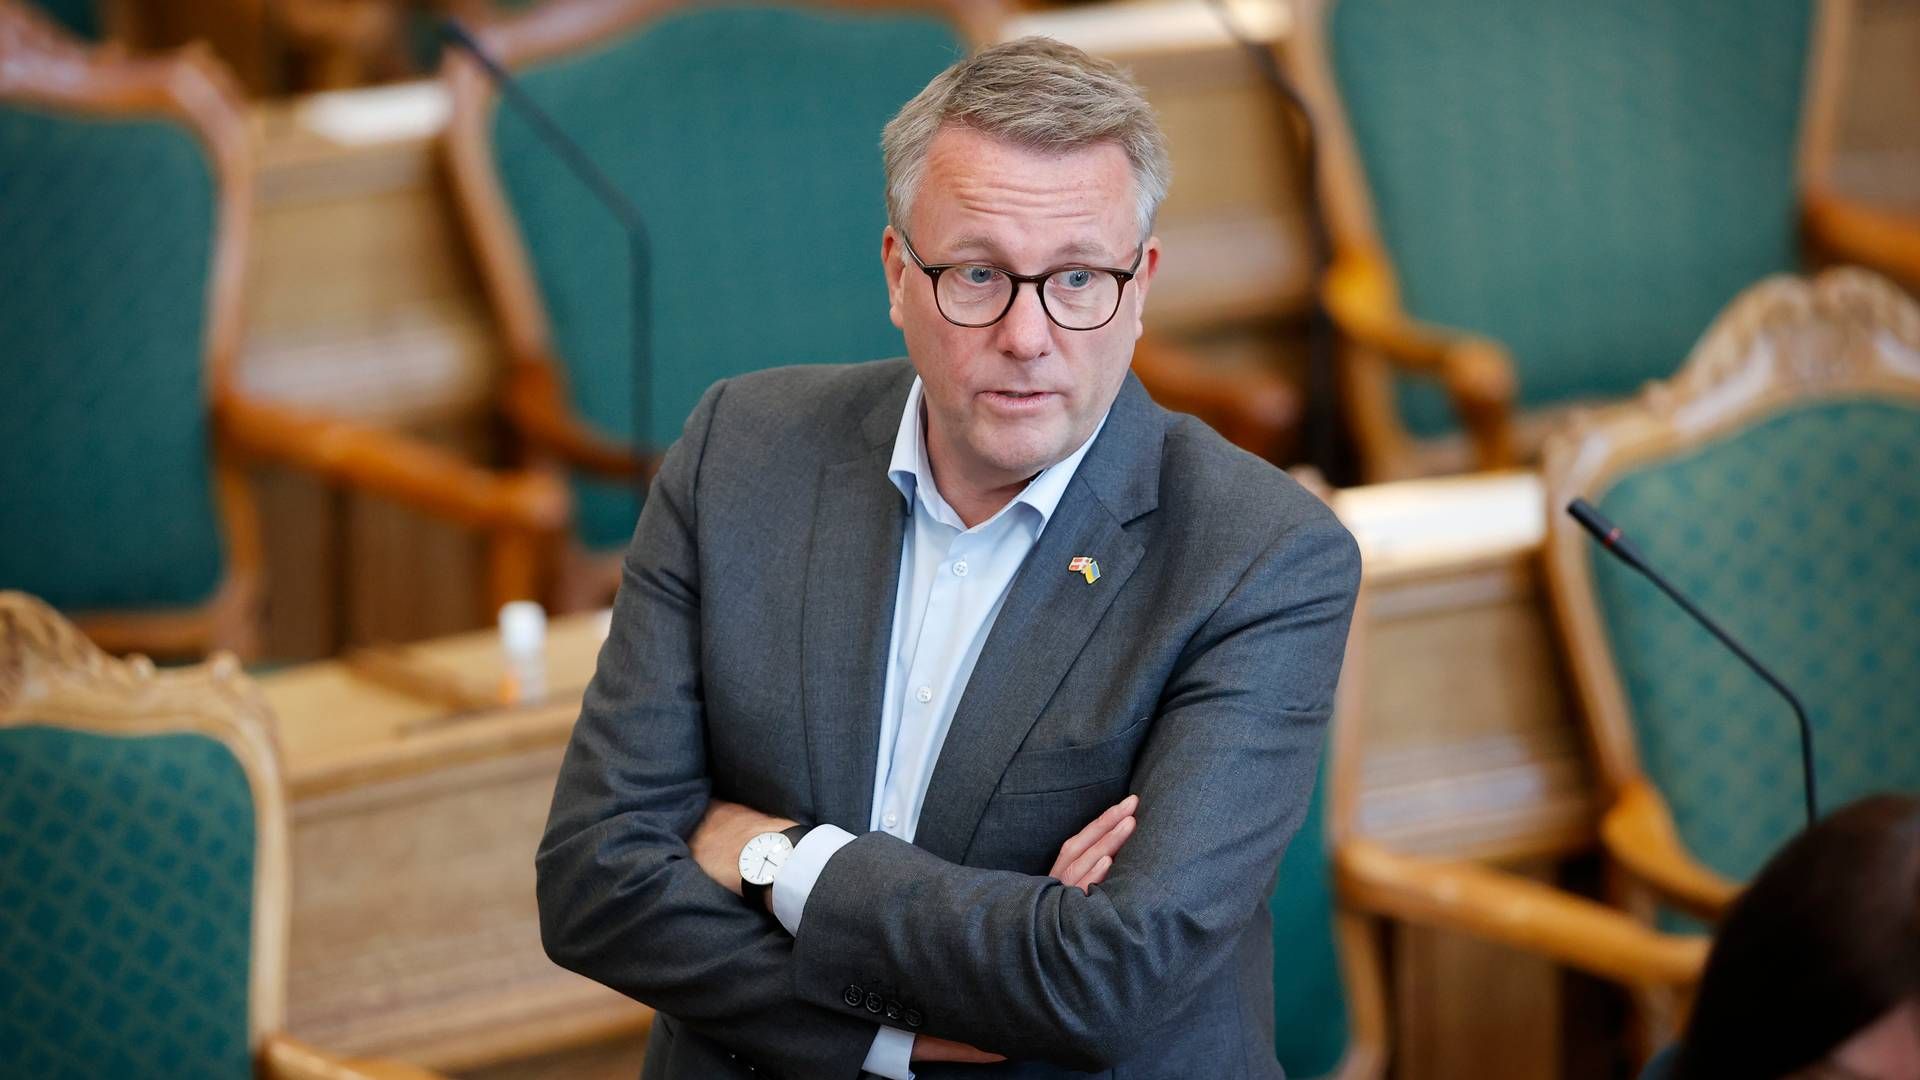 Erhvervsminister Morten Bødskov (S) har fået overdraget en række mulige besparelser på erhvervsområdet, som nu skal gennemgåes. | Foto: Jens Dresling/Ritzau Scanpix